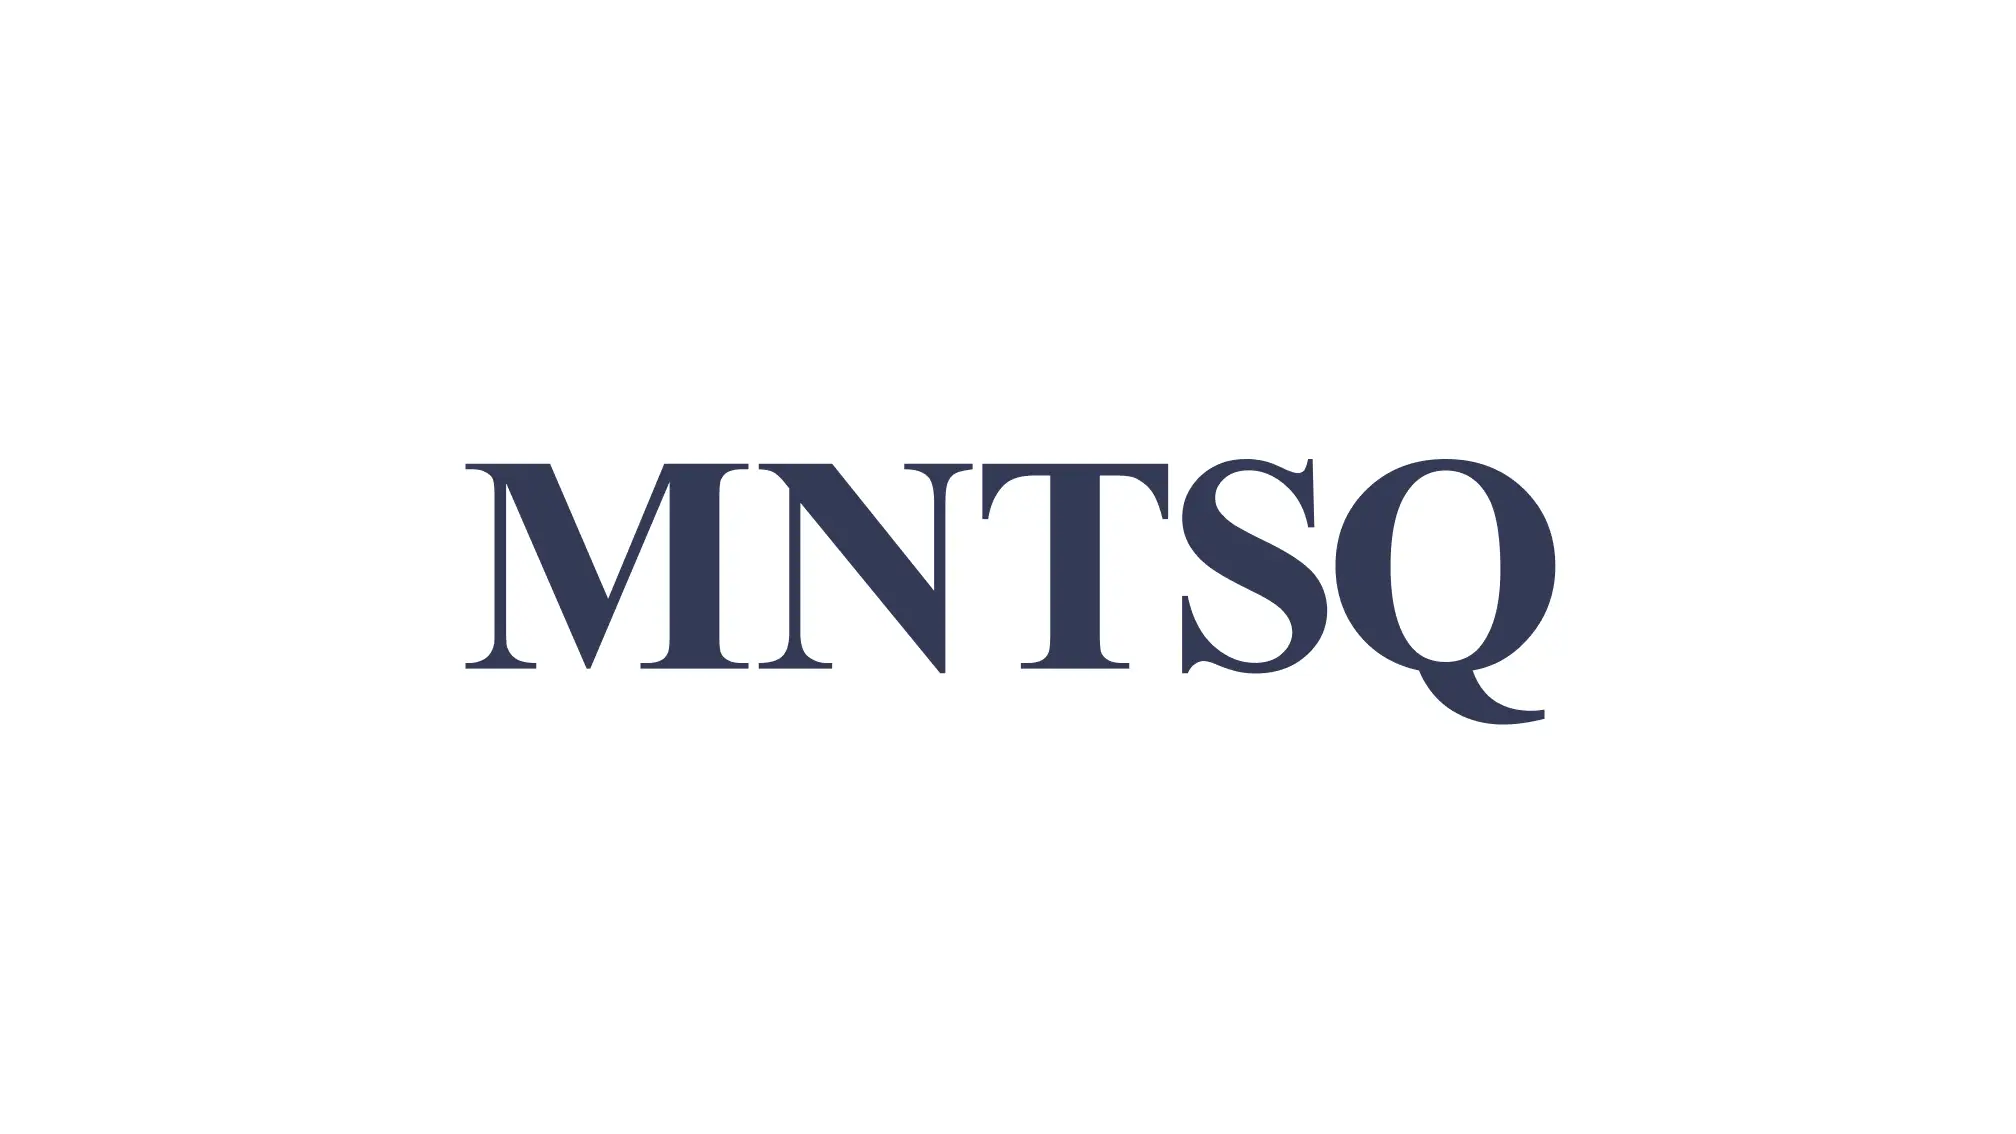 契約業務システム「MNTSQ」を三菱ＨＣキャピタルに提供